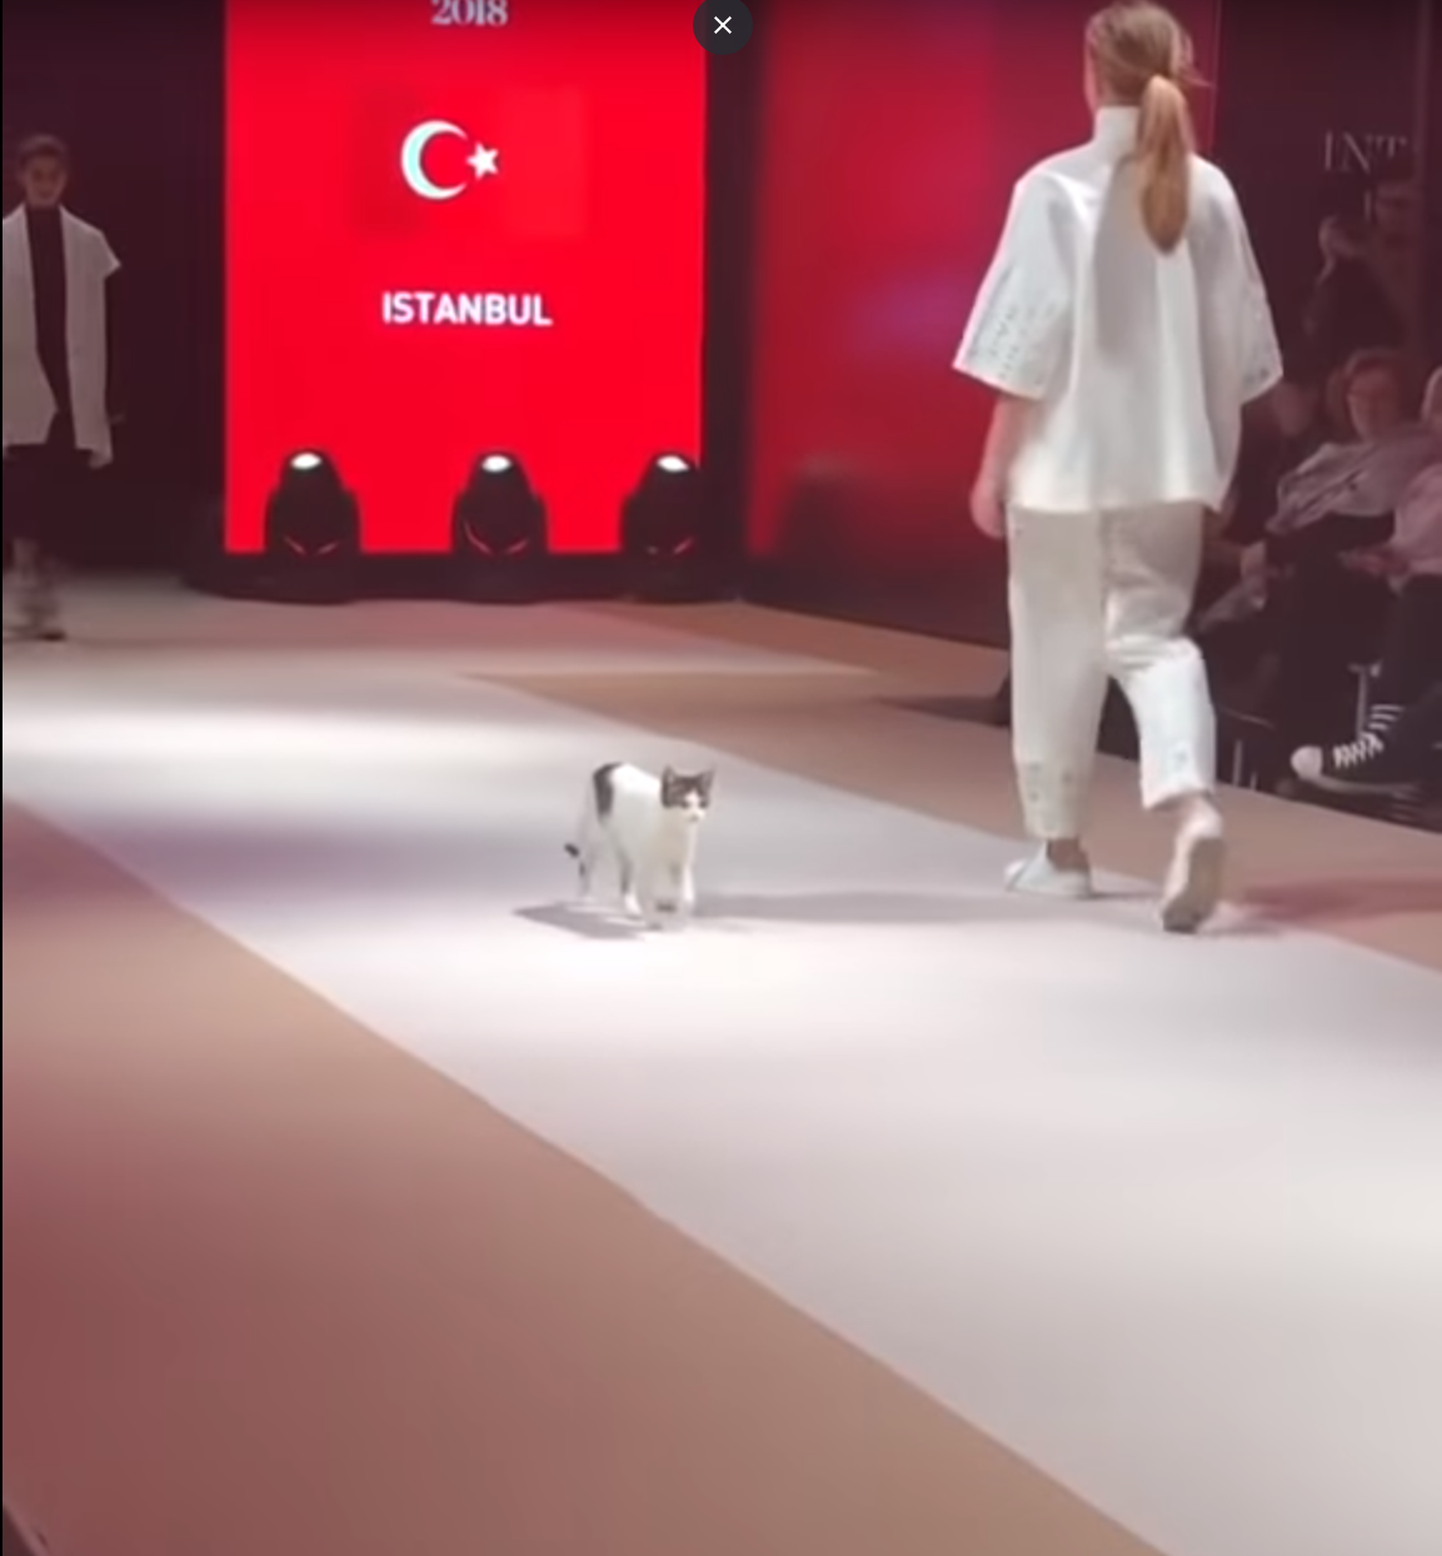 Ulakas kass varastas Istanbuli moehsowl kogu tähelepanu.